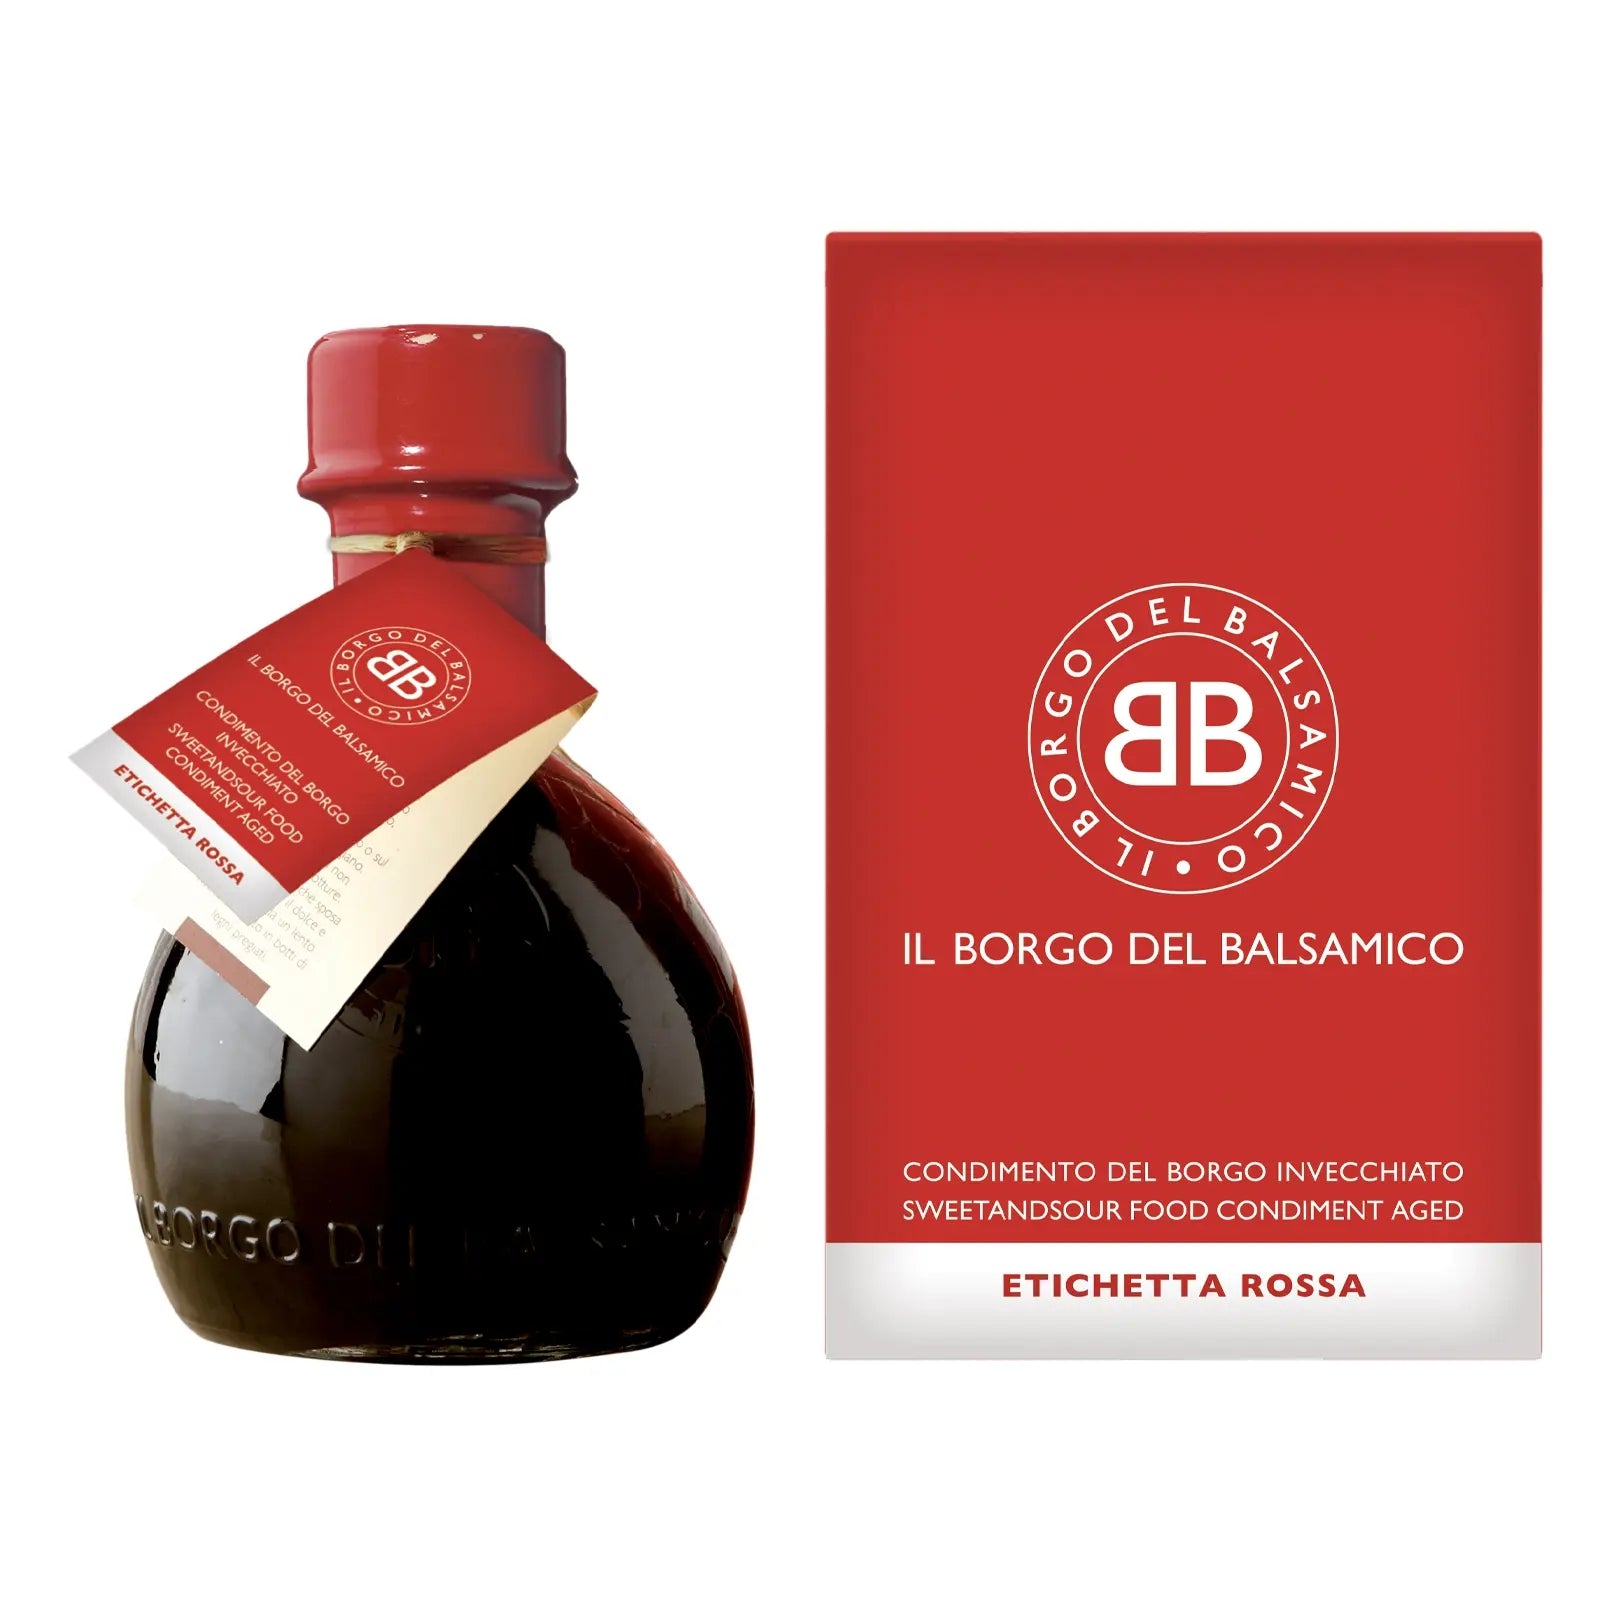 Borgo del Balsamico - Orange Label Balsamic Vinegar